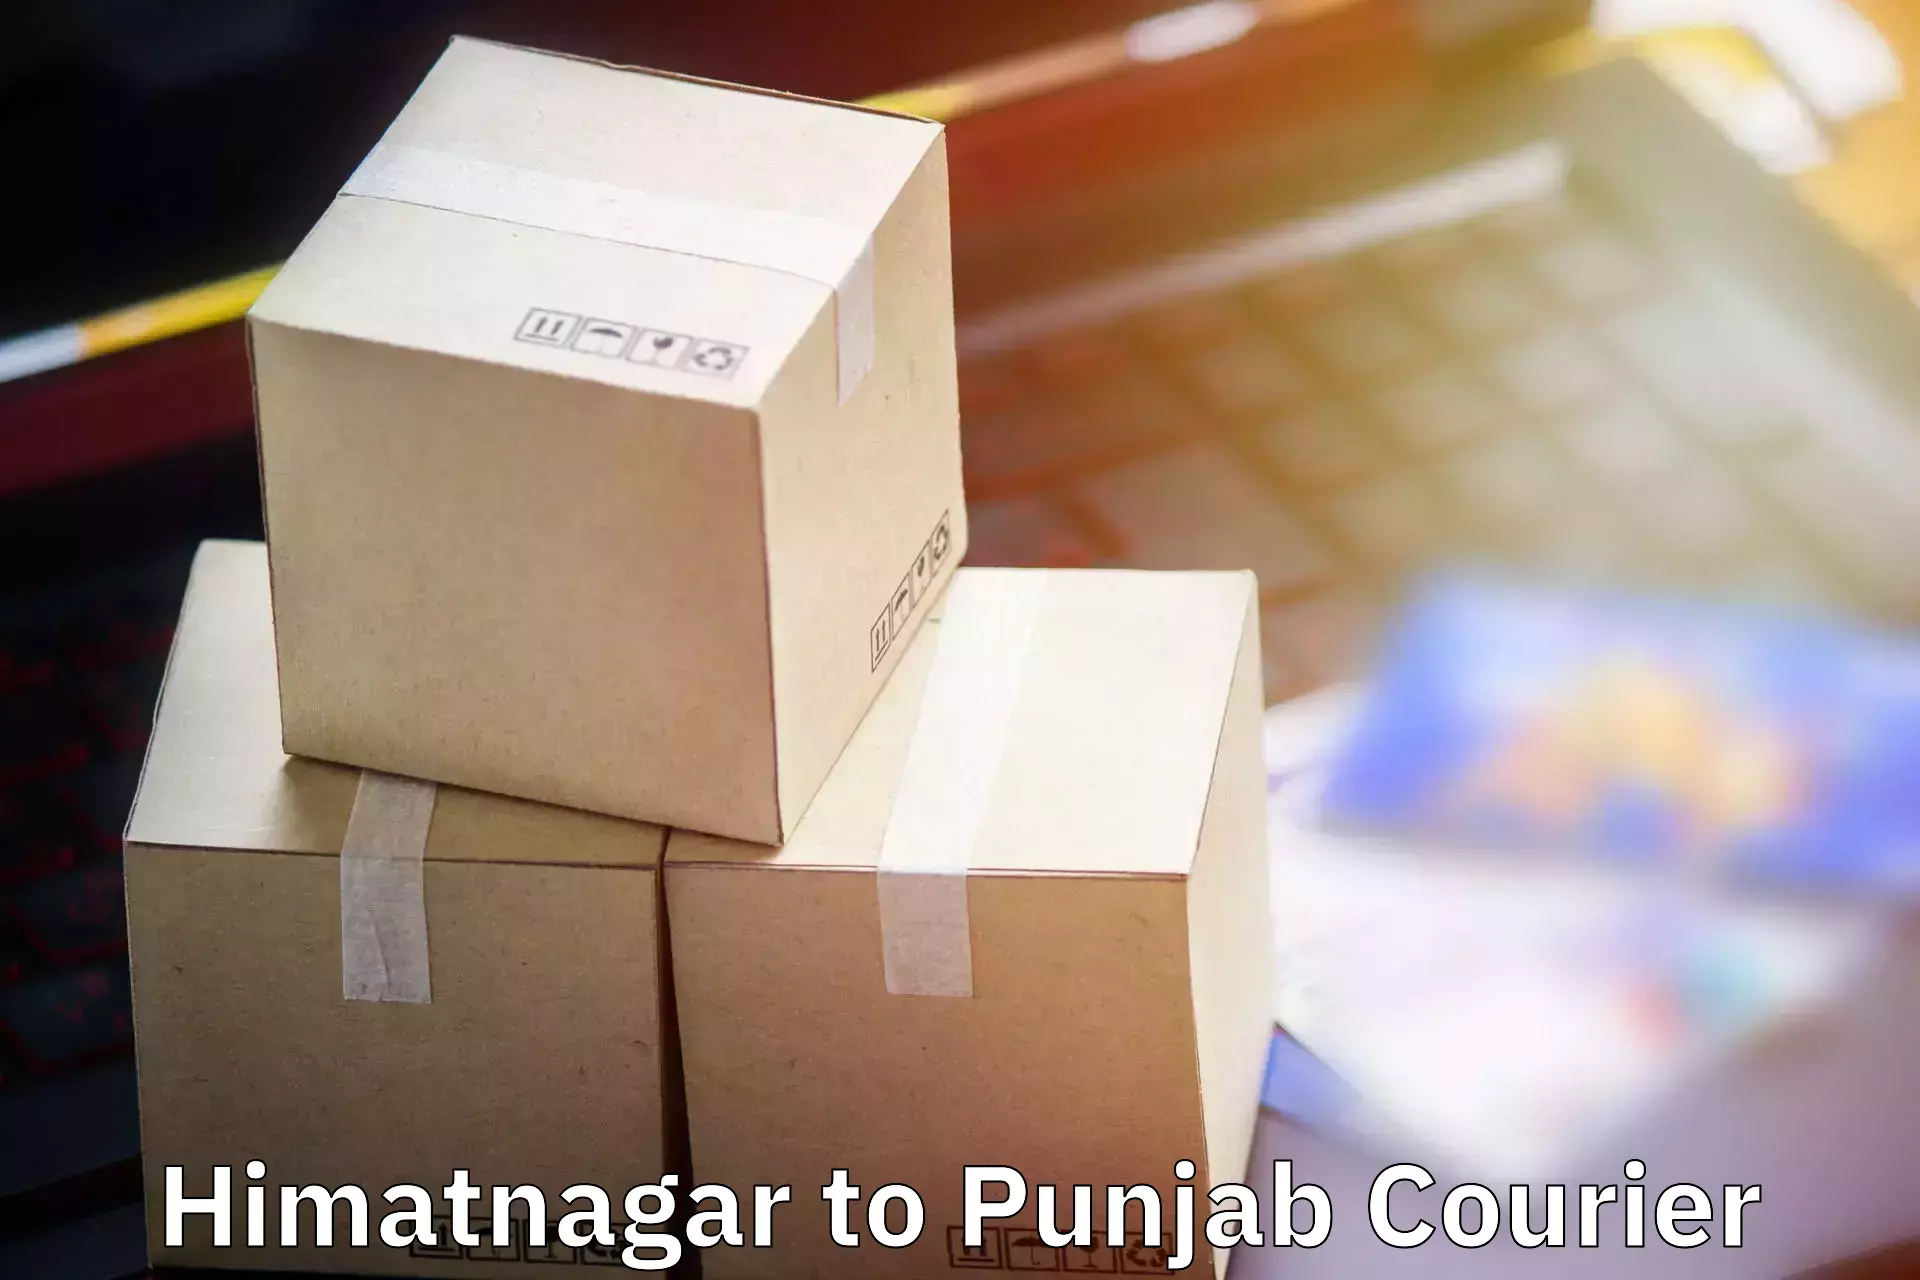 Luggage dispatch service Himatnagar to Bhadaur